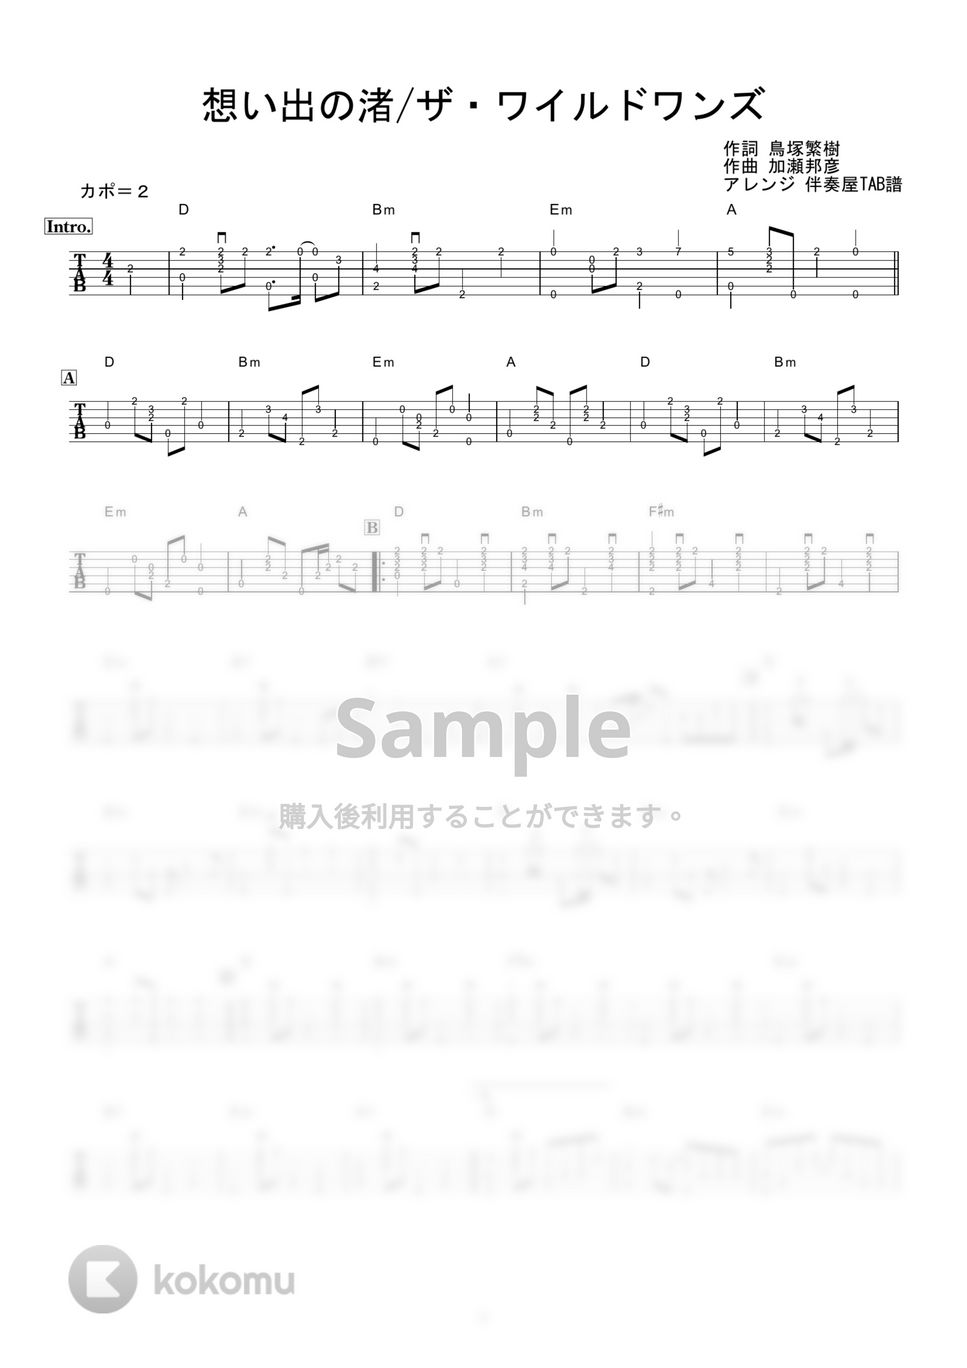 ザ・ワイルドワンズ - 想い出の渚 (ギター伴奏/イントロ・間奏ソロギター) by 伴奏屋TAB譜